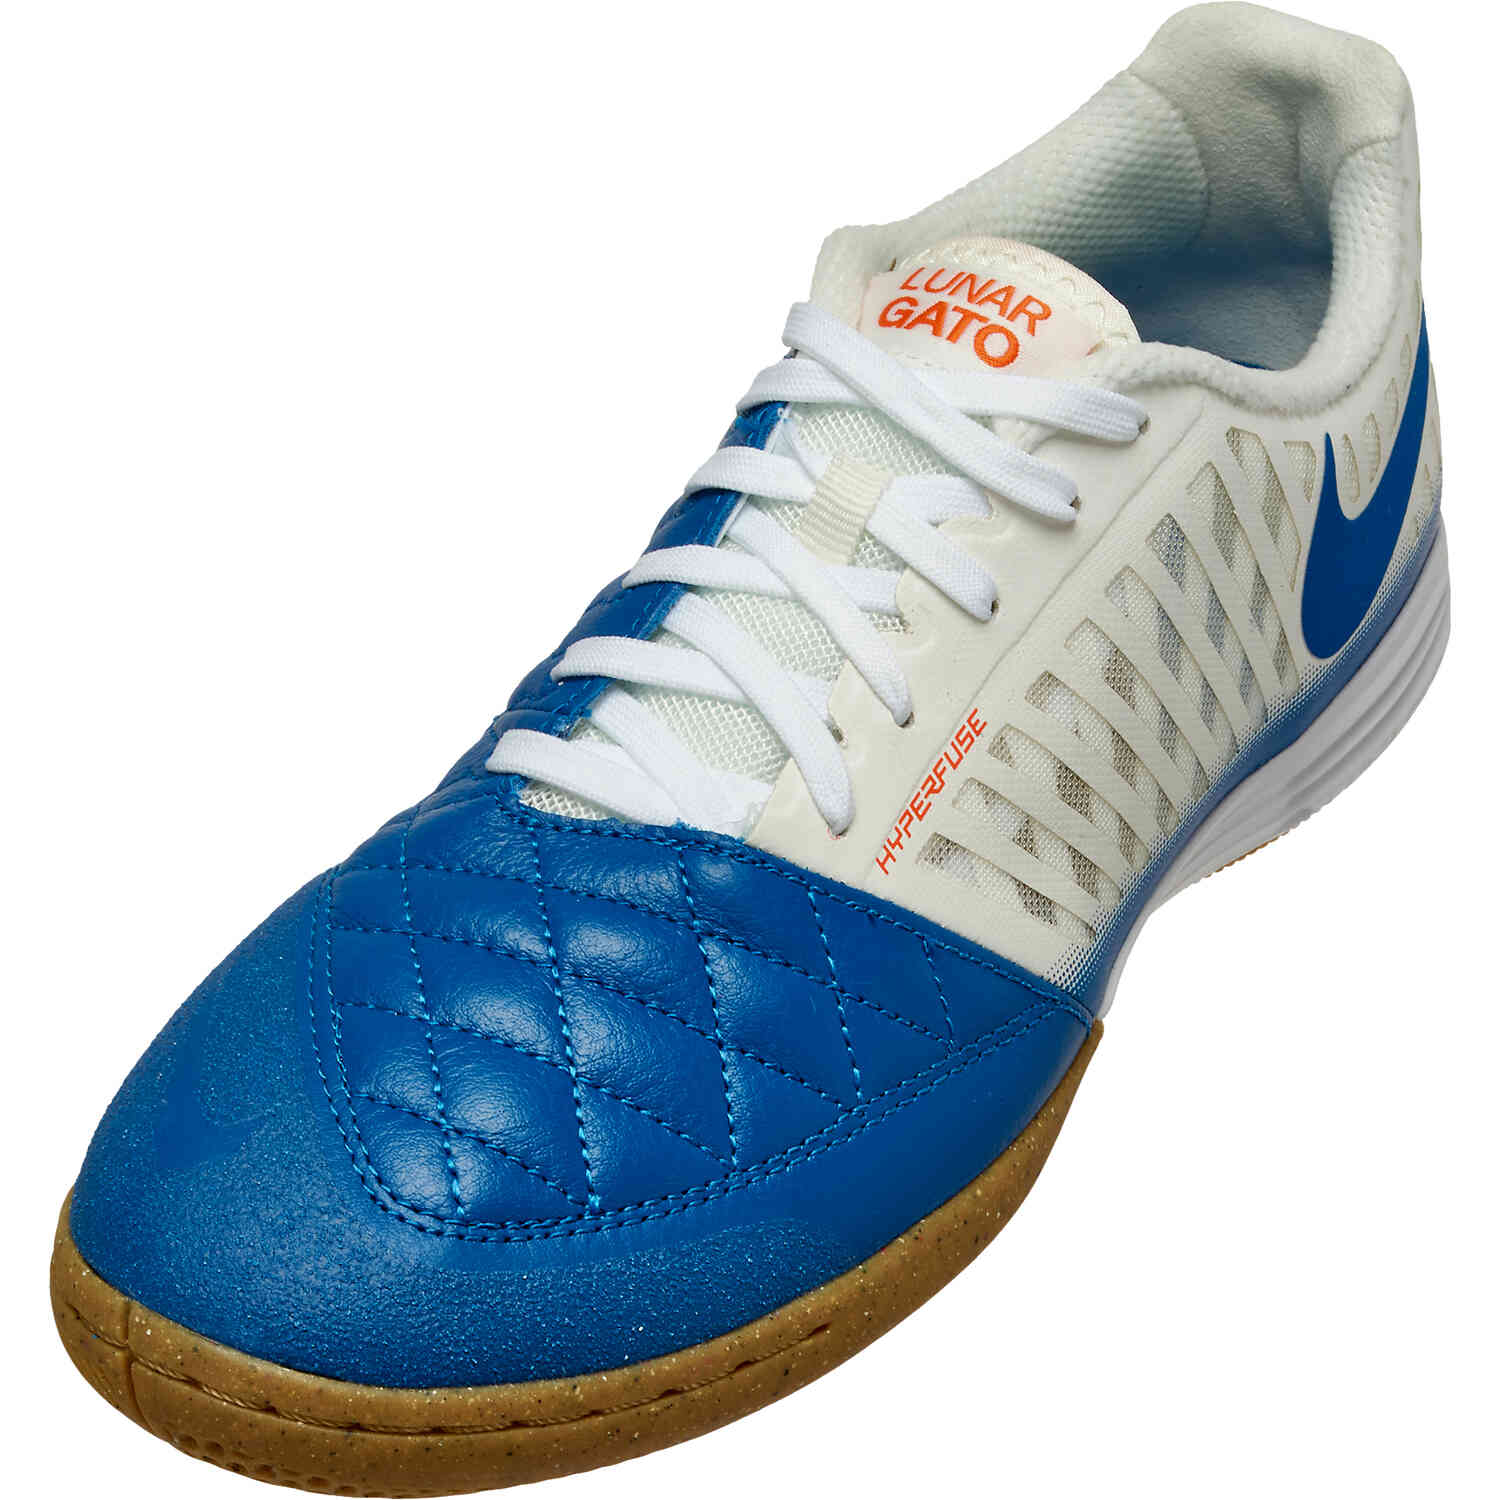 hule Forskellige Bevægelse Nike Lunar Gato II IC Indoor Soccer Shoes - Sail, Blue Jay & White - Soccer  Master